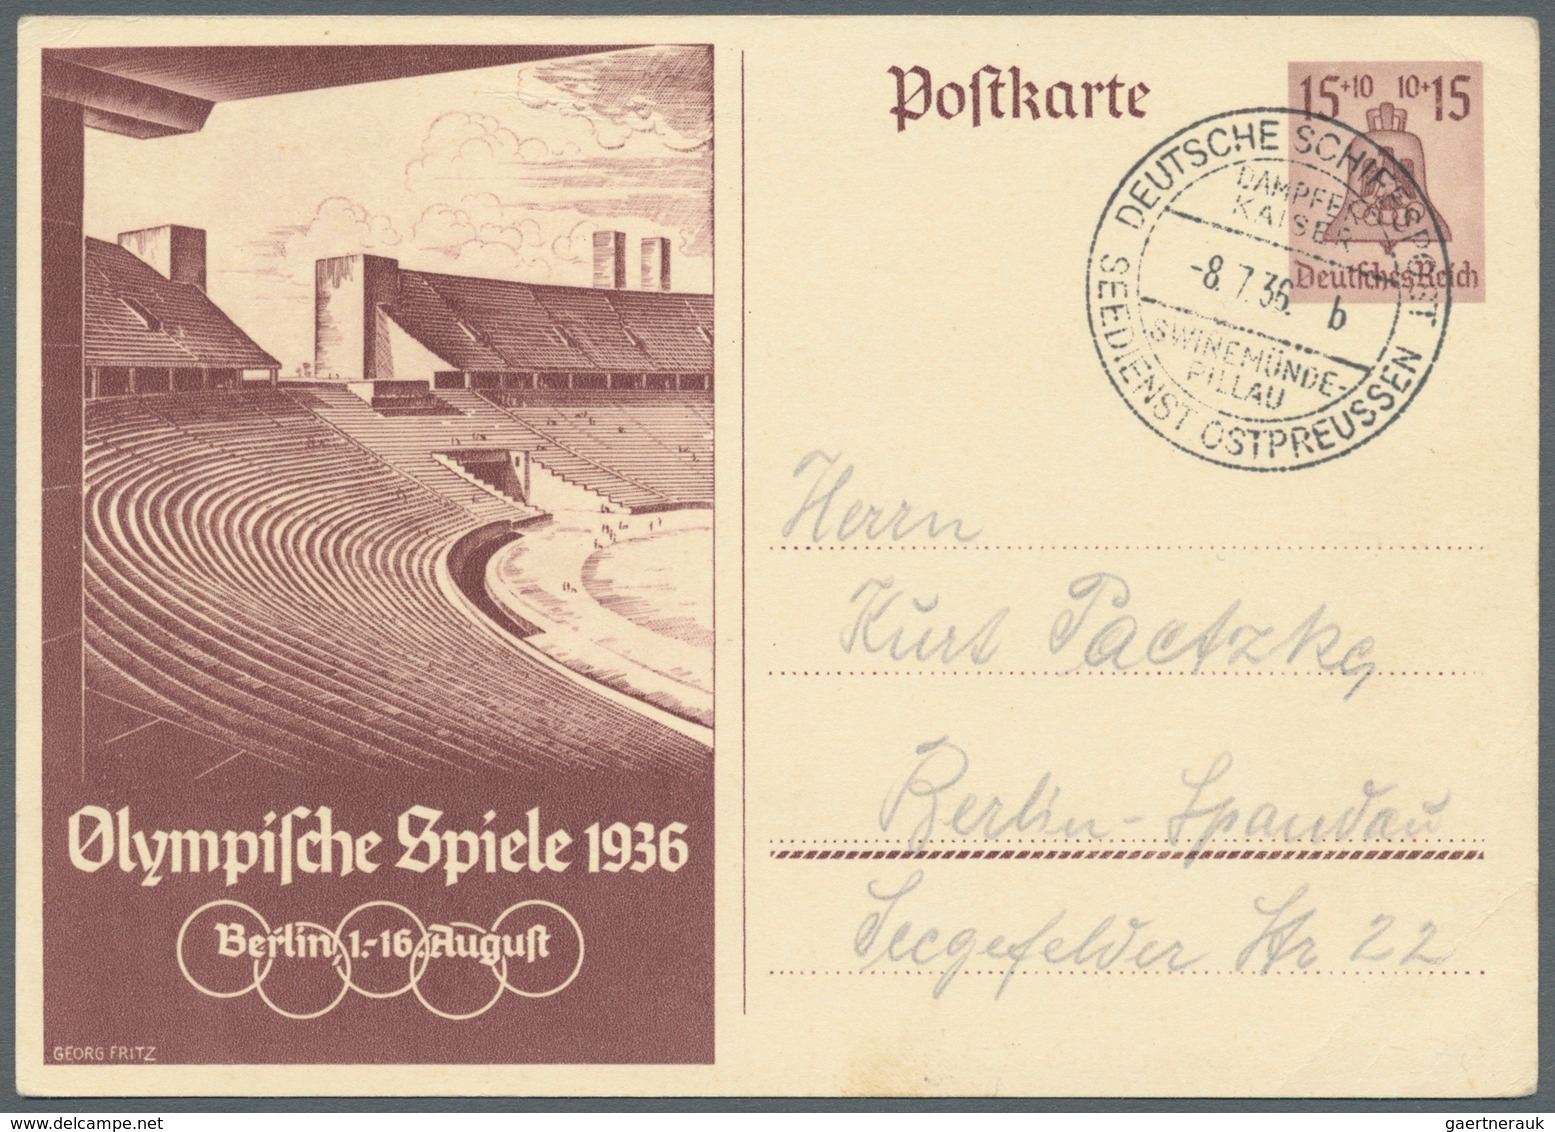 Schiffspost Deutschland: 1900/1939, kleine Sammlung mit ca. 50 Briefen und Karten inkl. einiger unge